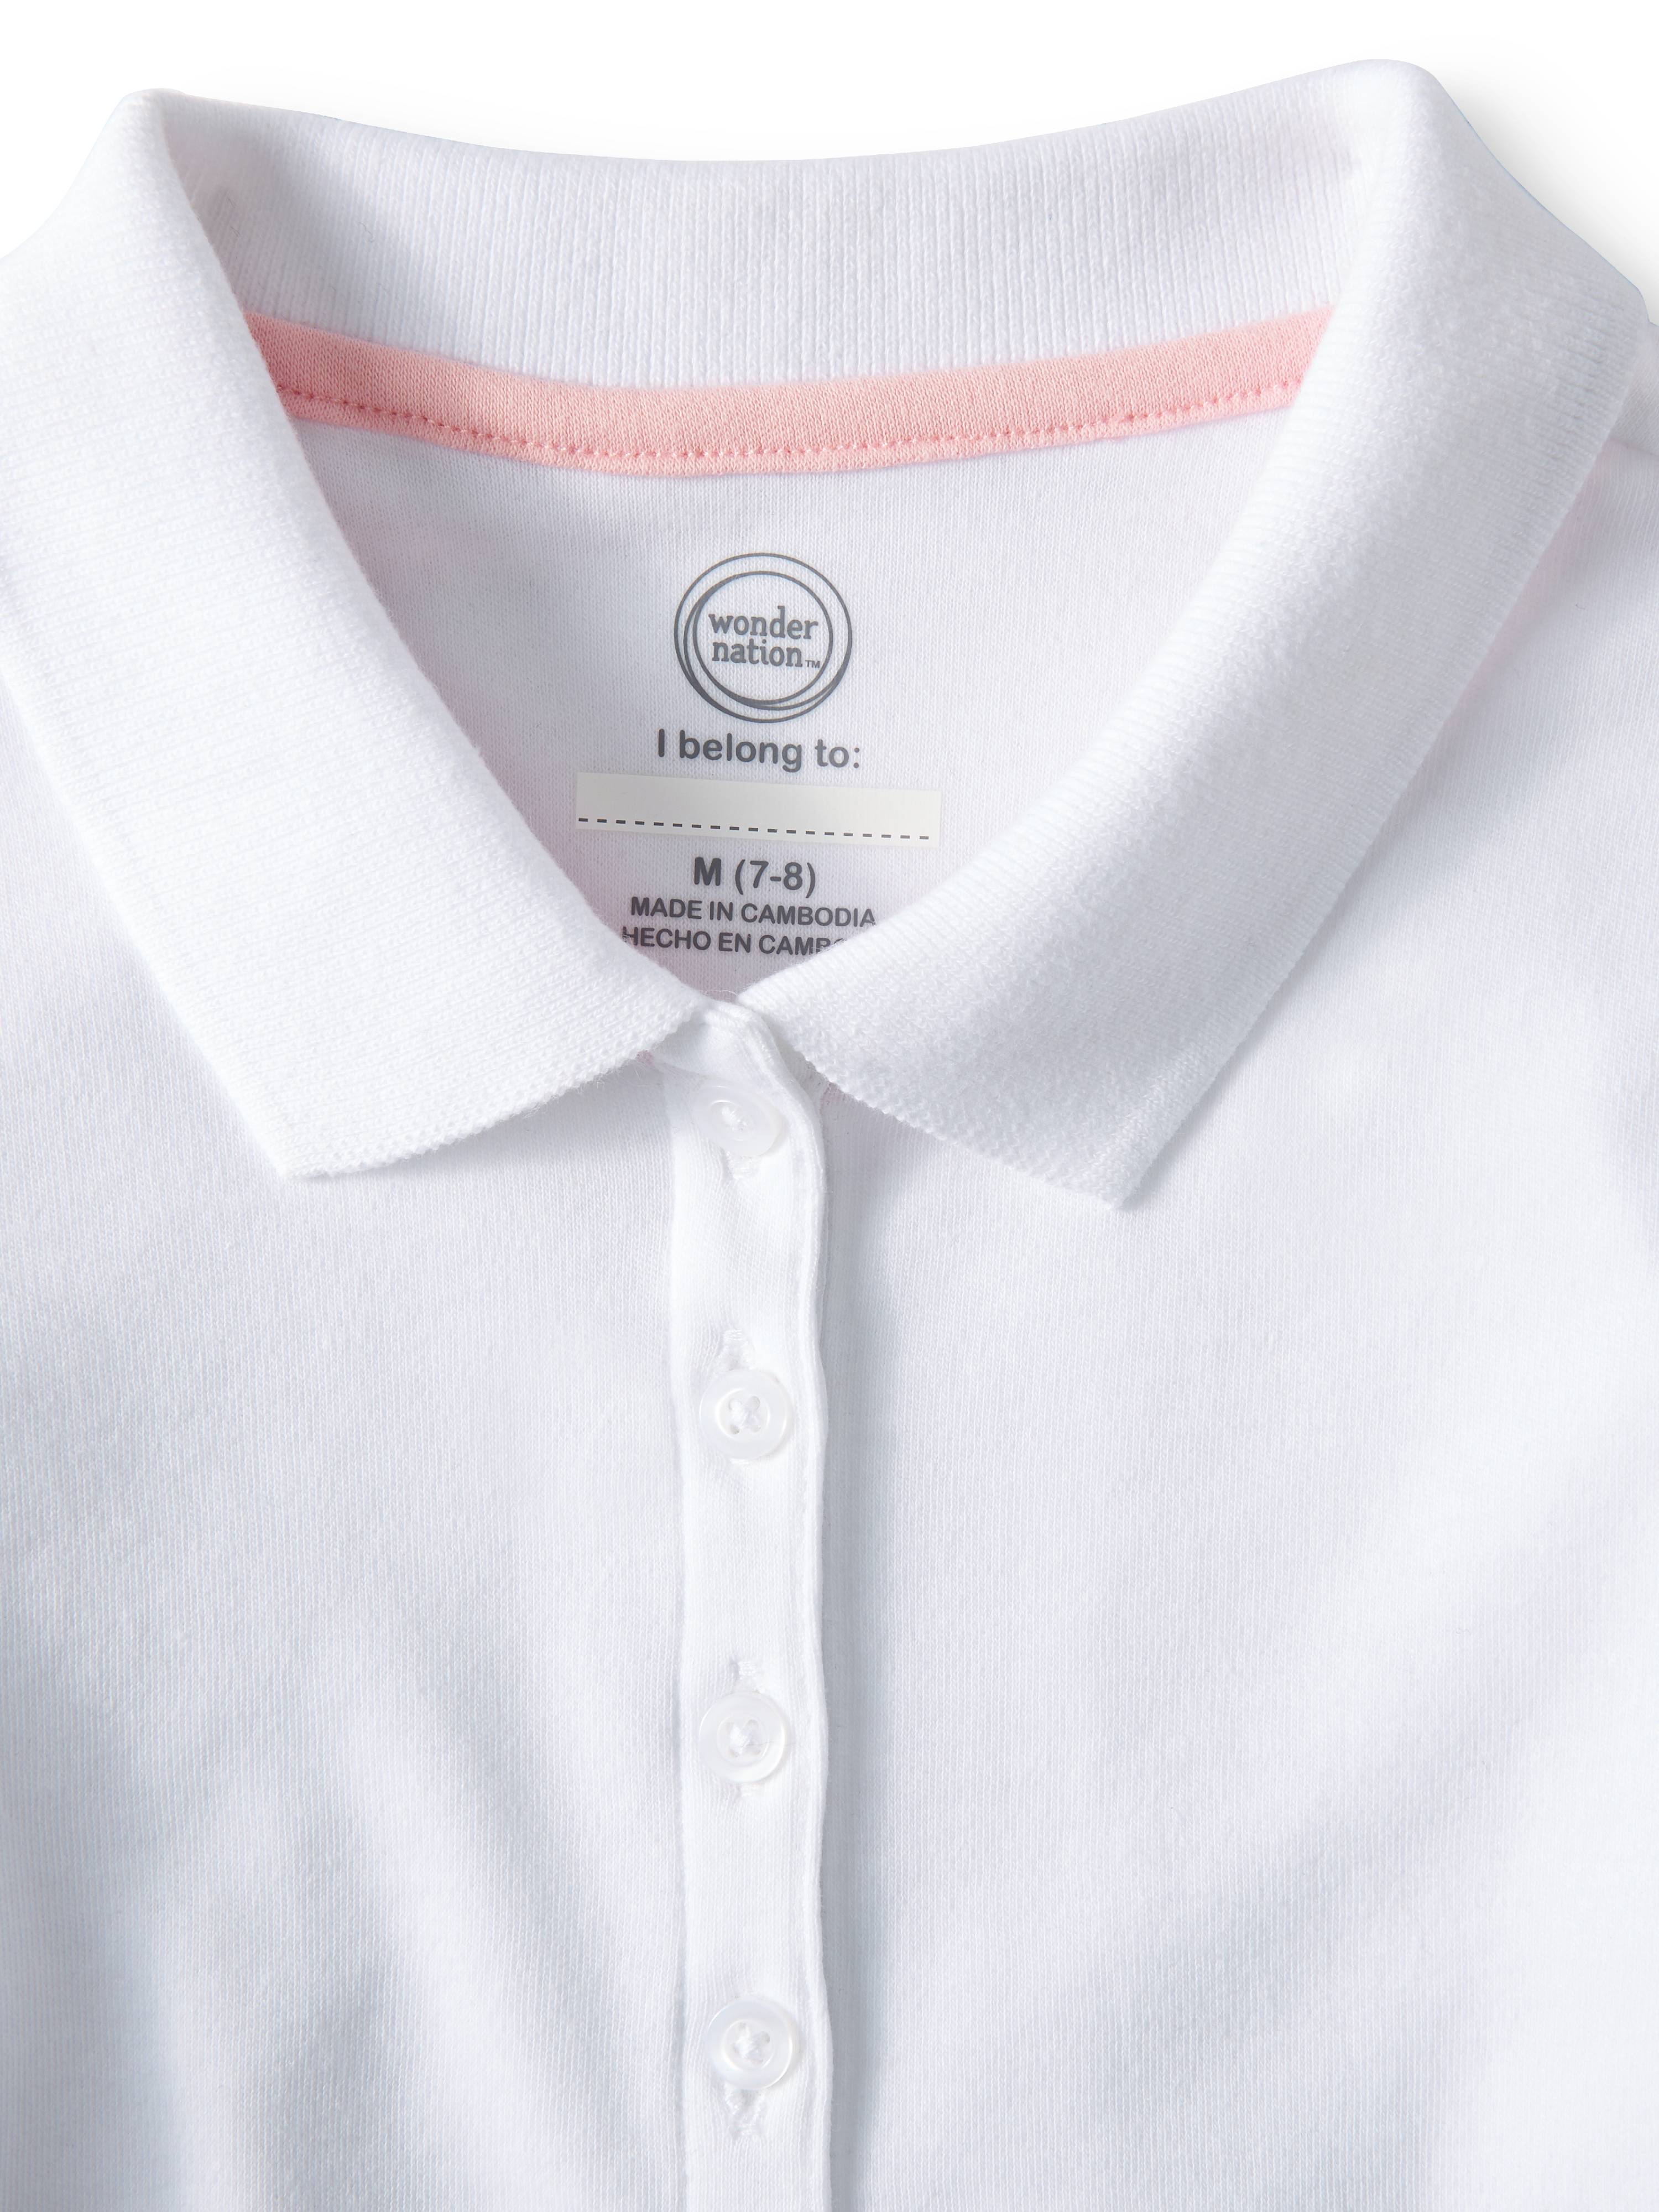 Wonder Nation Girls School Uniform Long Sleeve Interlock Polo Shirt, 4-Pack Value Bundle, Sizes 4-18 - image 3 of 7